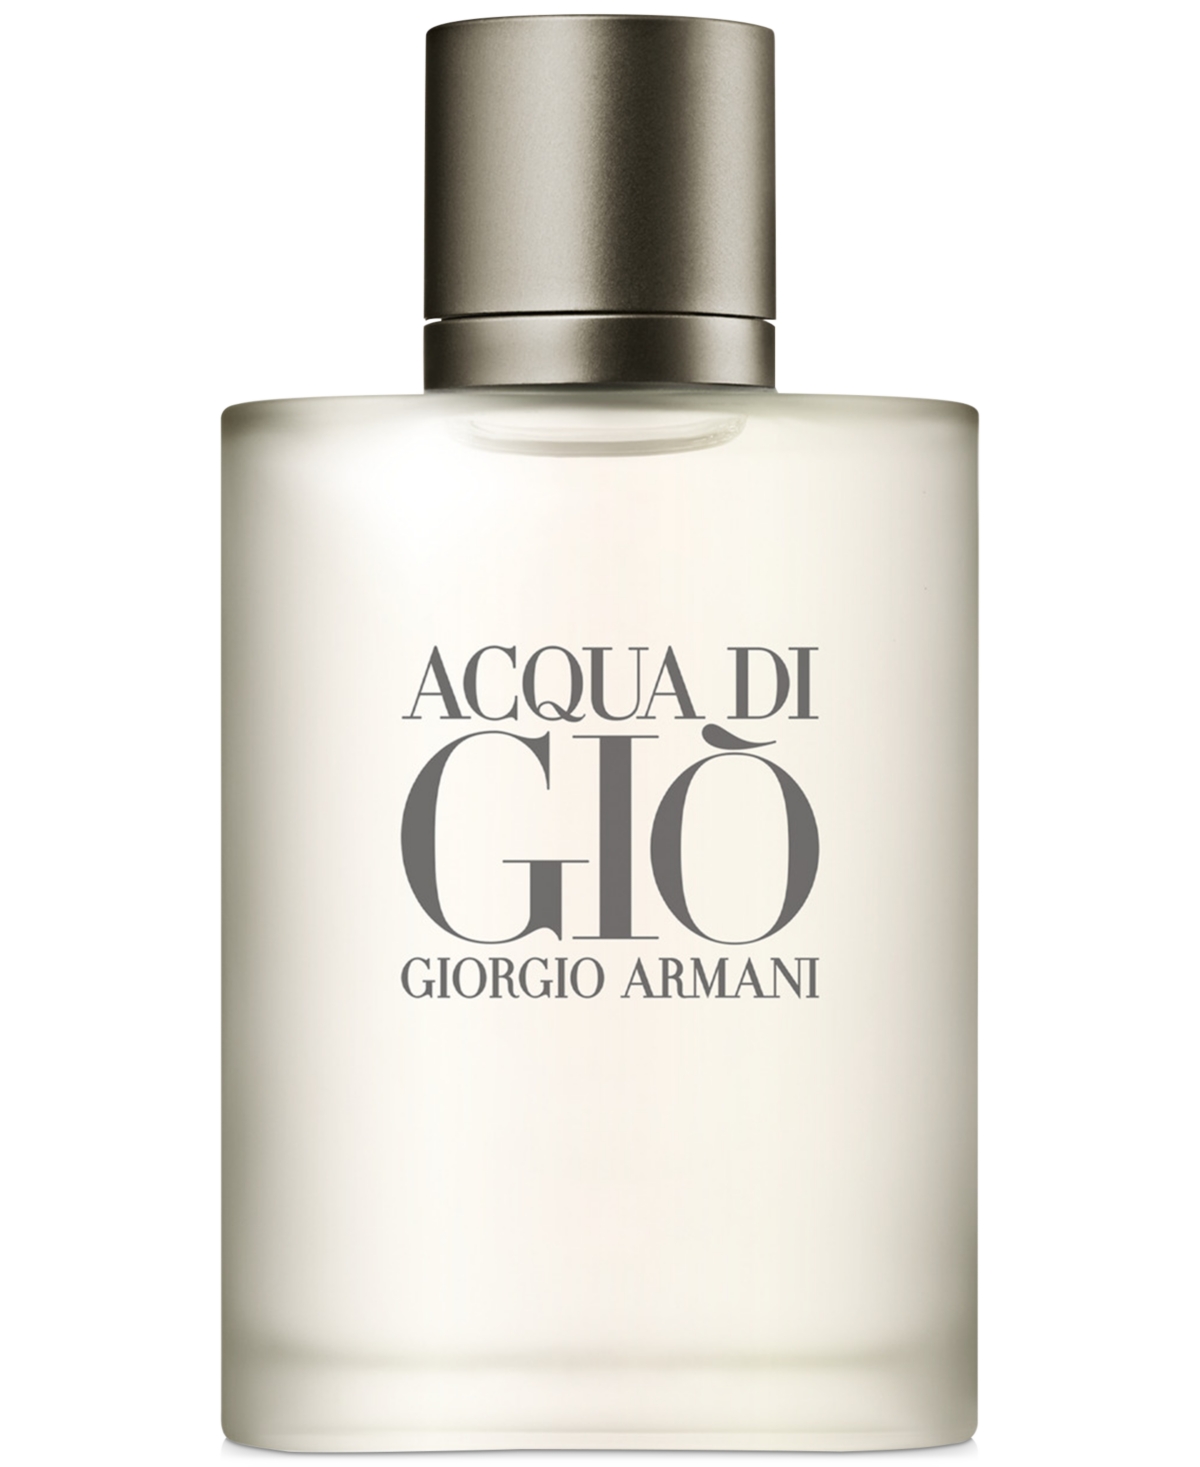 Armani Beauty Men's Acqua di Gio Eau de Toilette Spray, 1.7-oz.